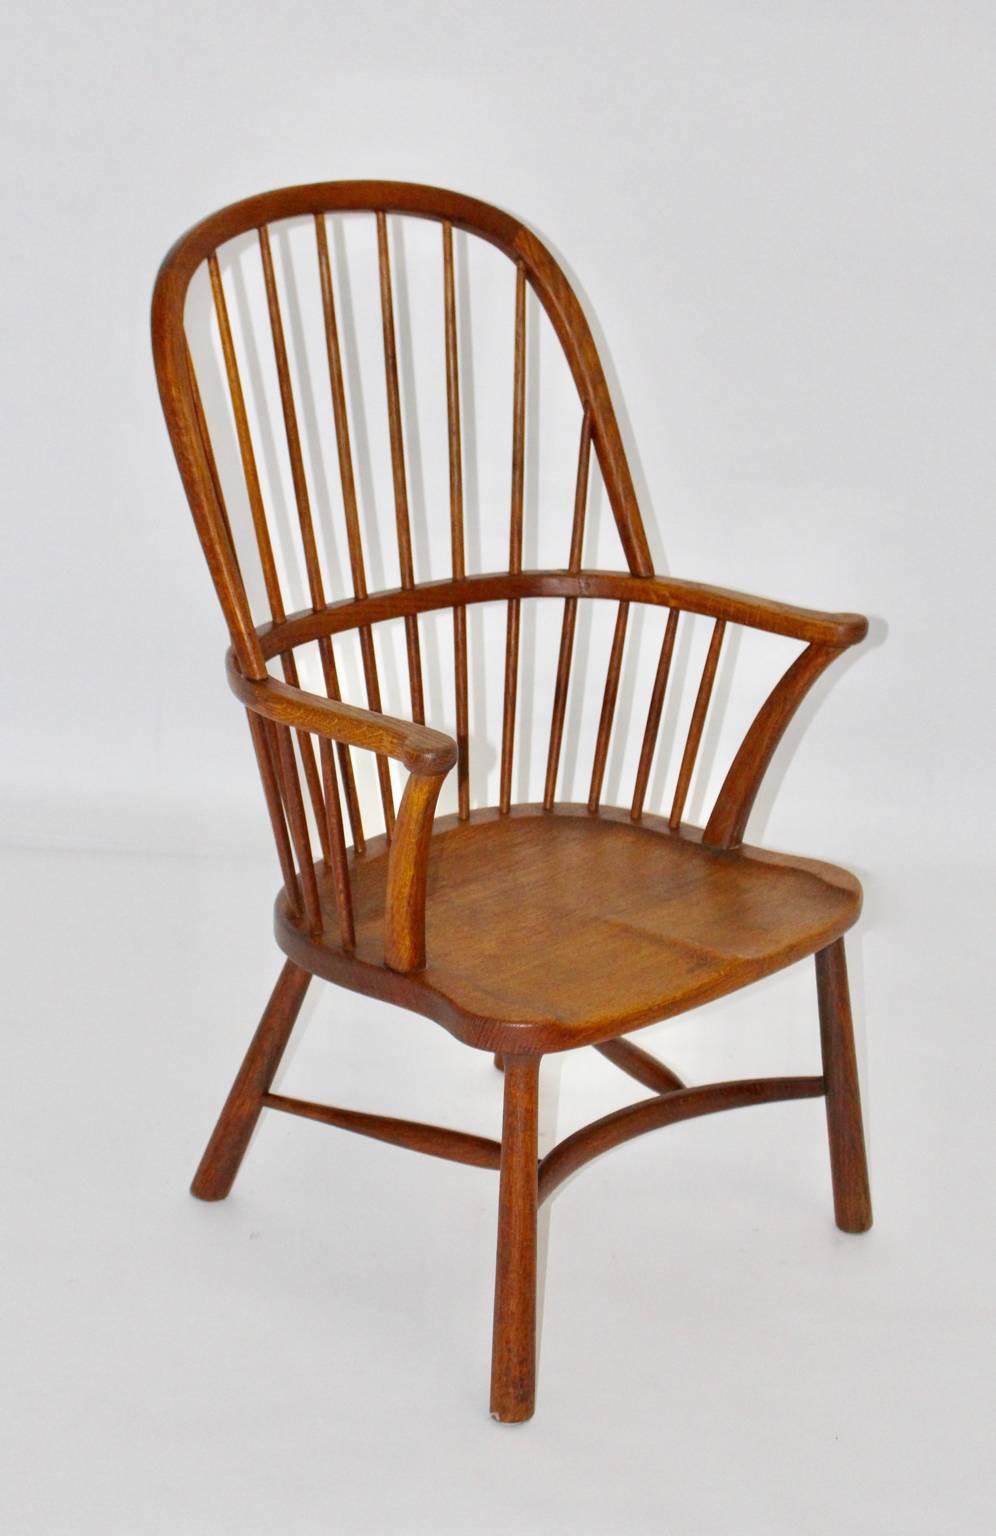 Chaise Windsor de l'ère Art Déco attribuée à Walter Sobotka, Vienne 1932.
La chaise WIndsor en bois de chêne massif présente une assise en forme de selle et des pieds coniques. 

Walter Sobotka (1888 Vienne - 1972 New York) occupe une place